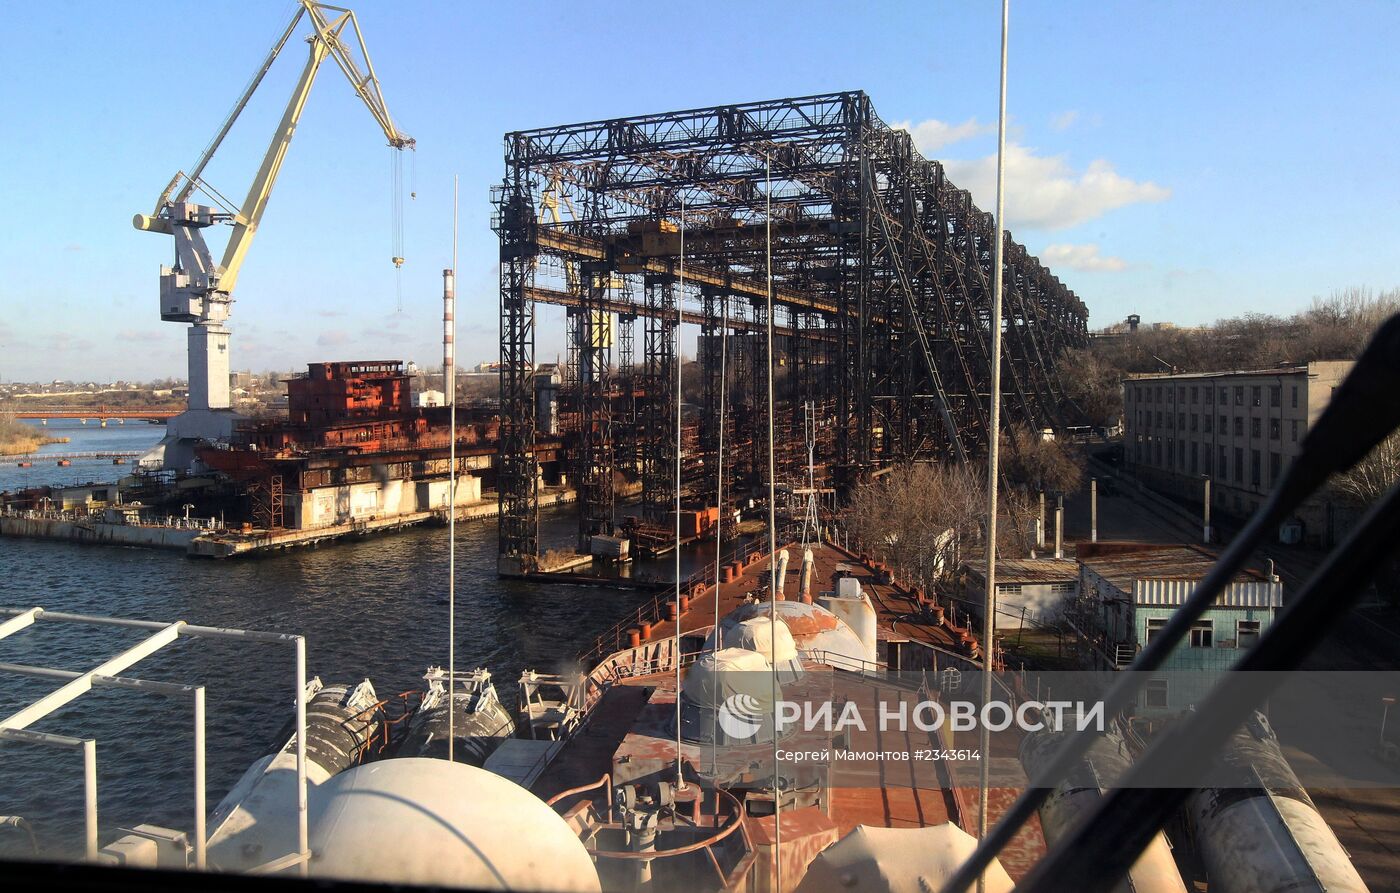 Ракетный крейсер "Украина" на Николаевском судостроительном заводе на Украине